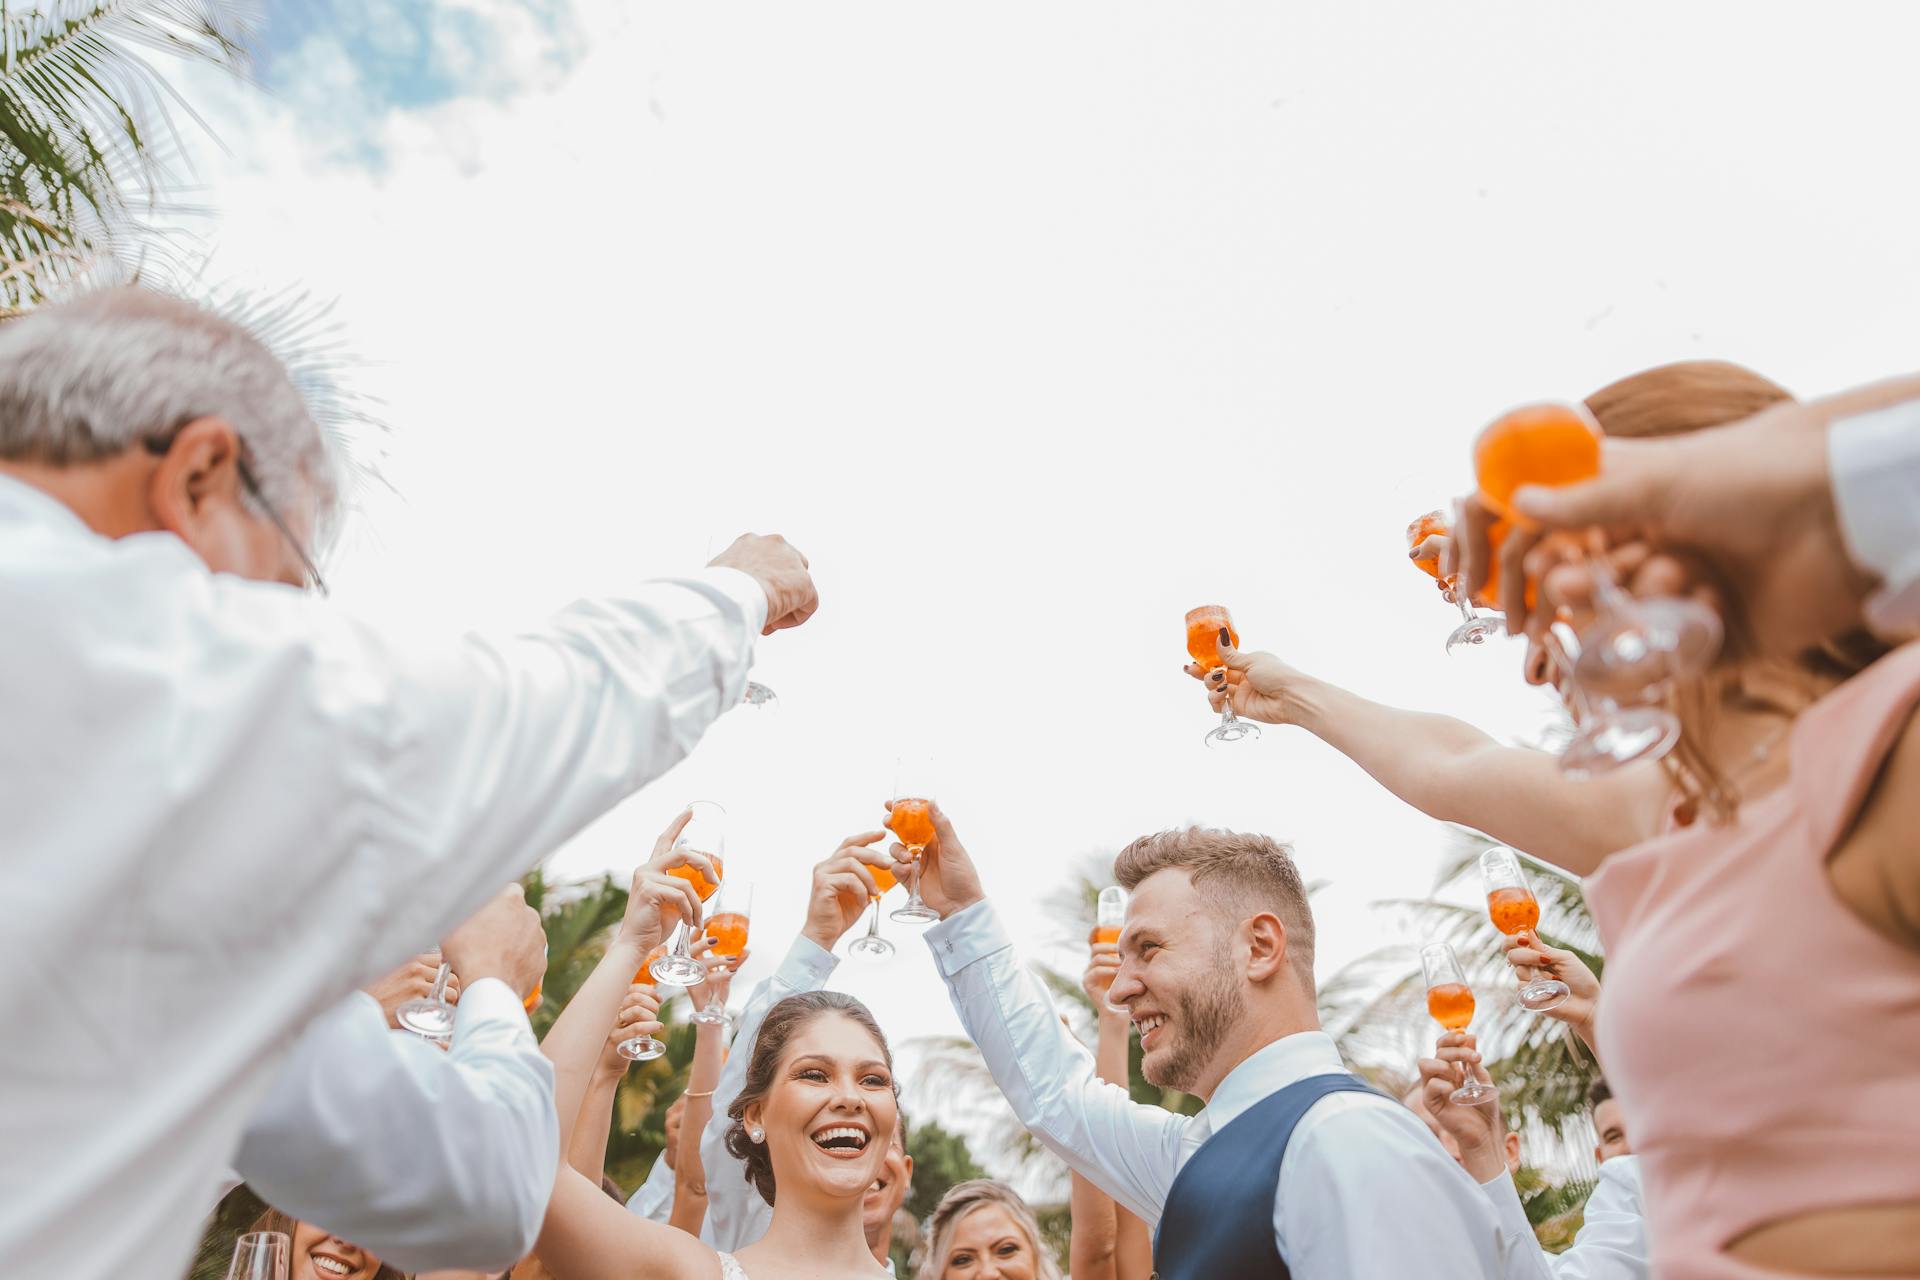 Des personnes lèvent leur verre pour porter un toast lors d'une réception de mariage | Source : Pexels